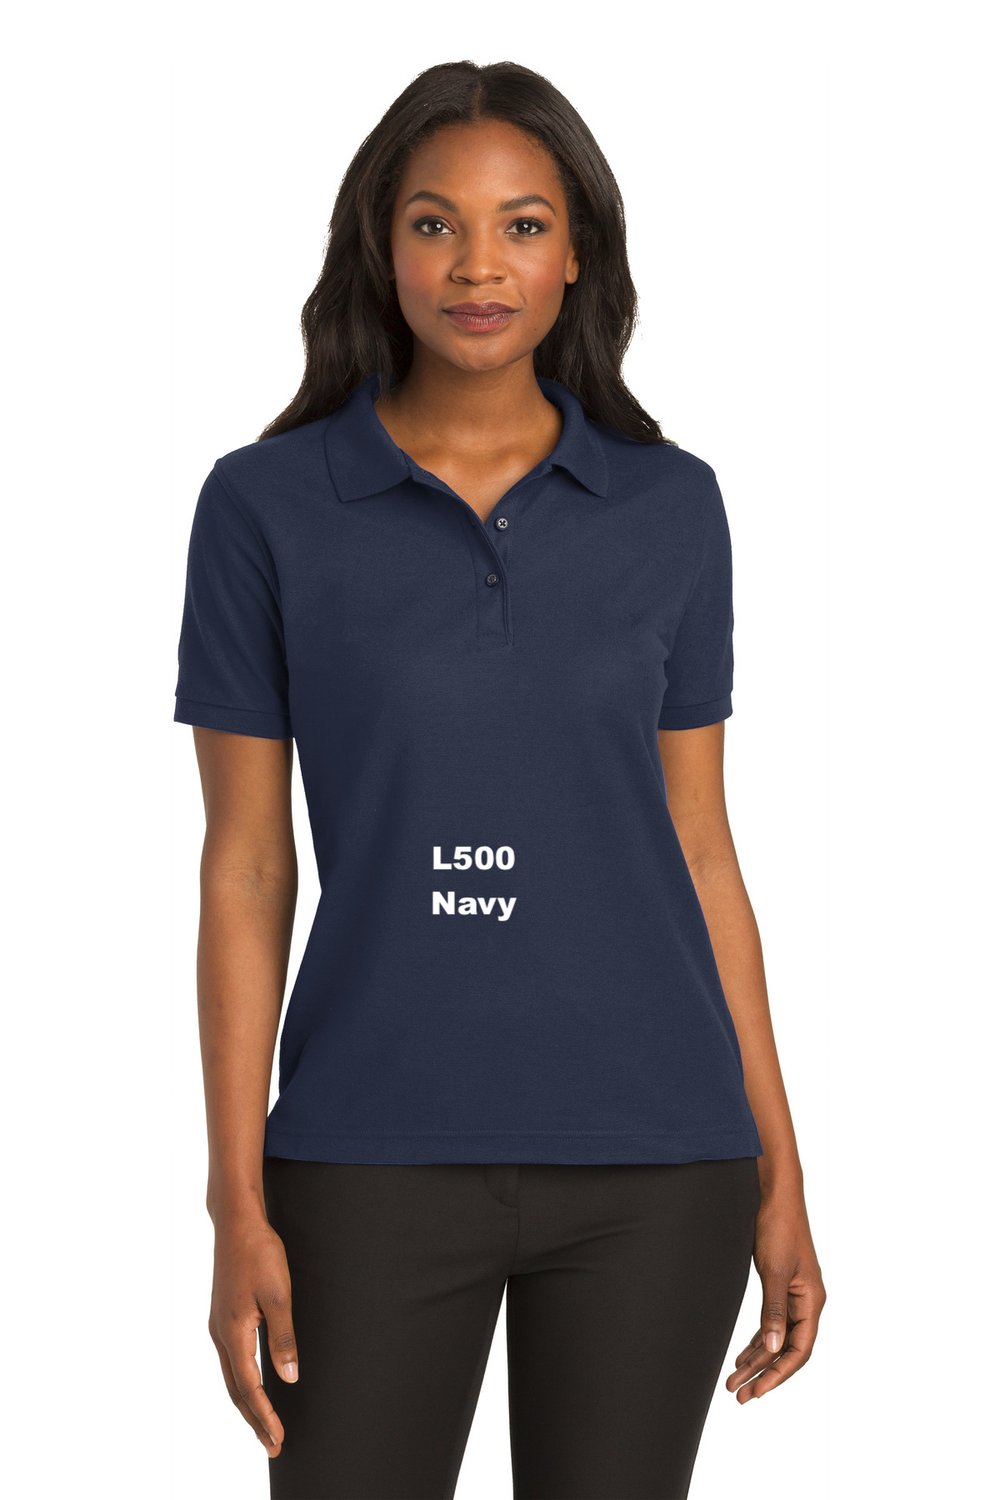 Women's Crew Technical Navy Polo Shirt